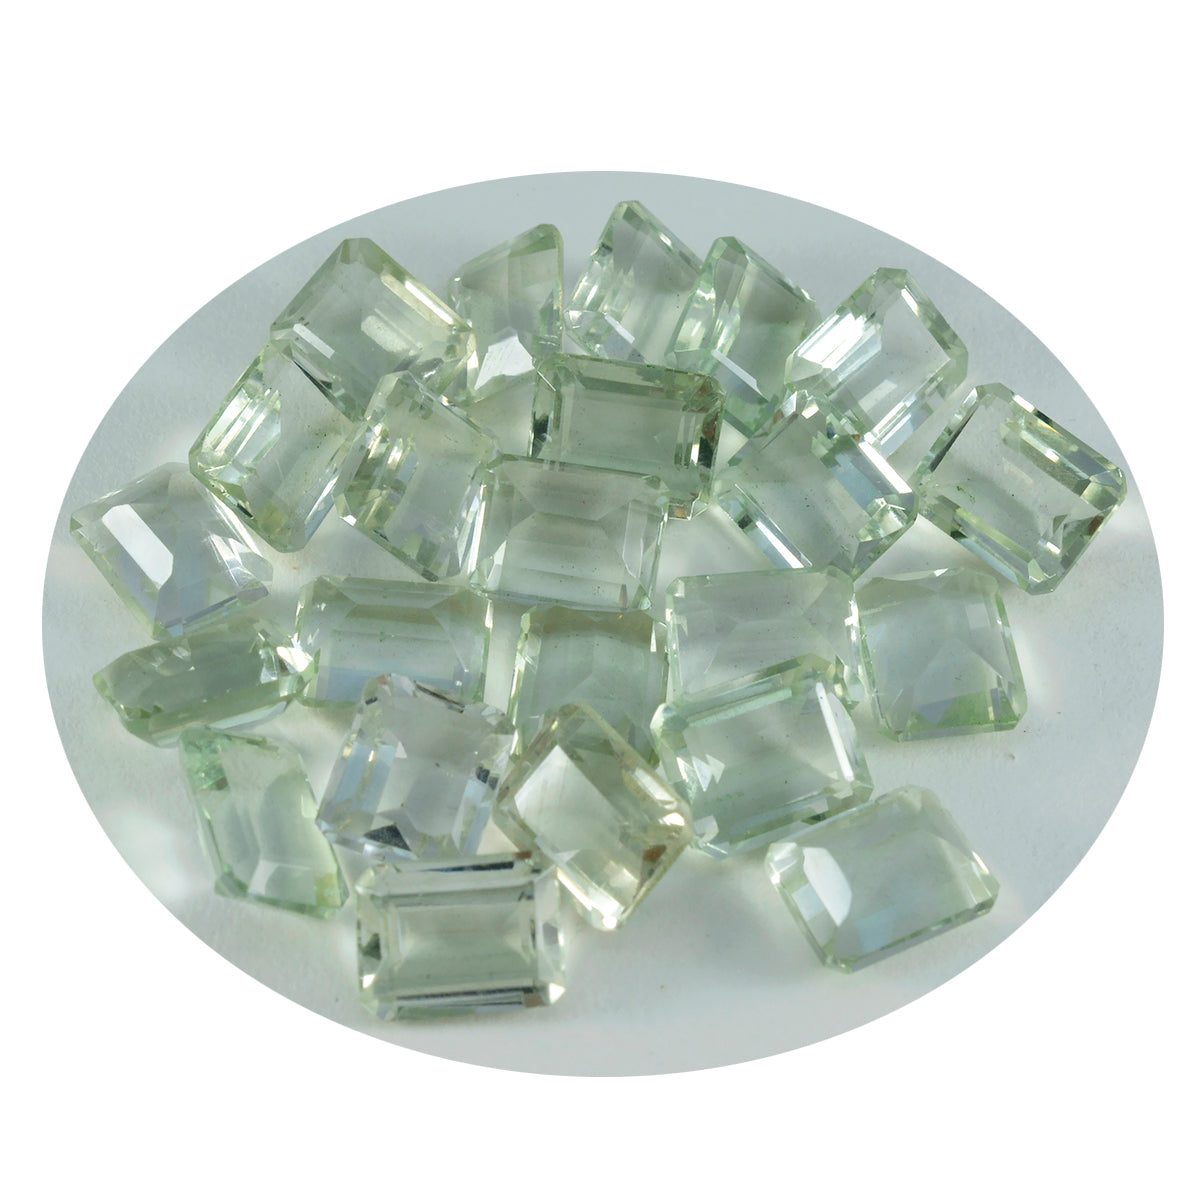 Riyogems 1PC Green Amethyst Faceted 7x9 mm Octagon Shape wonderful Quality Loose Gems